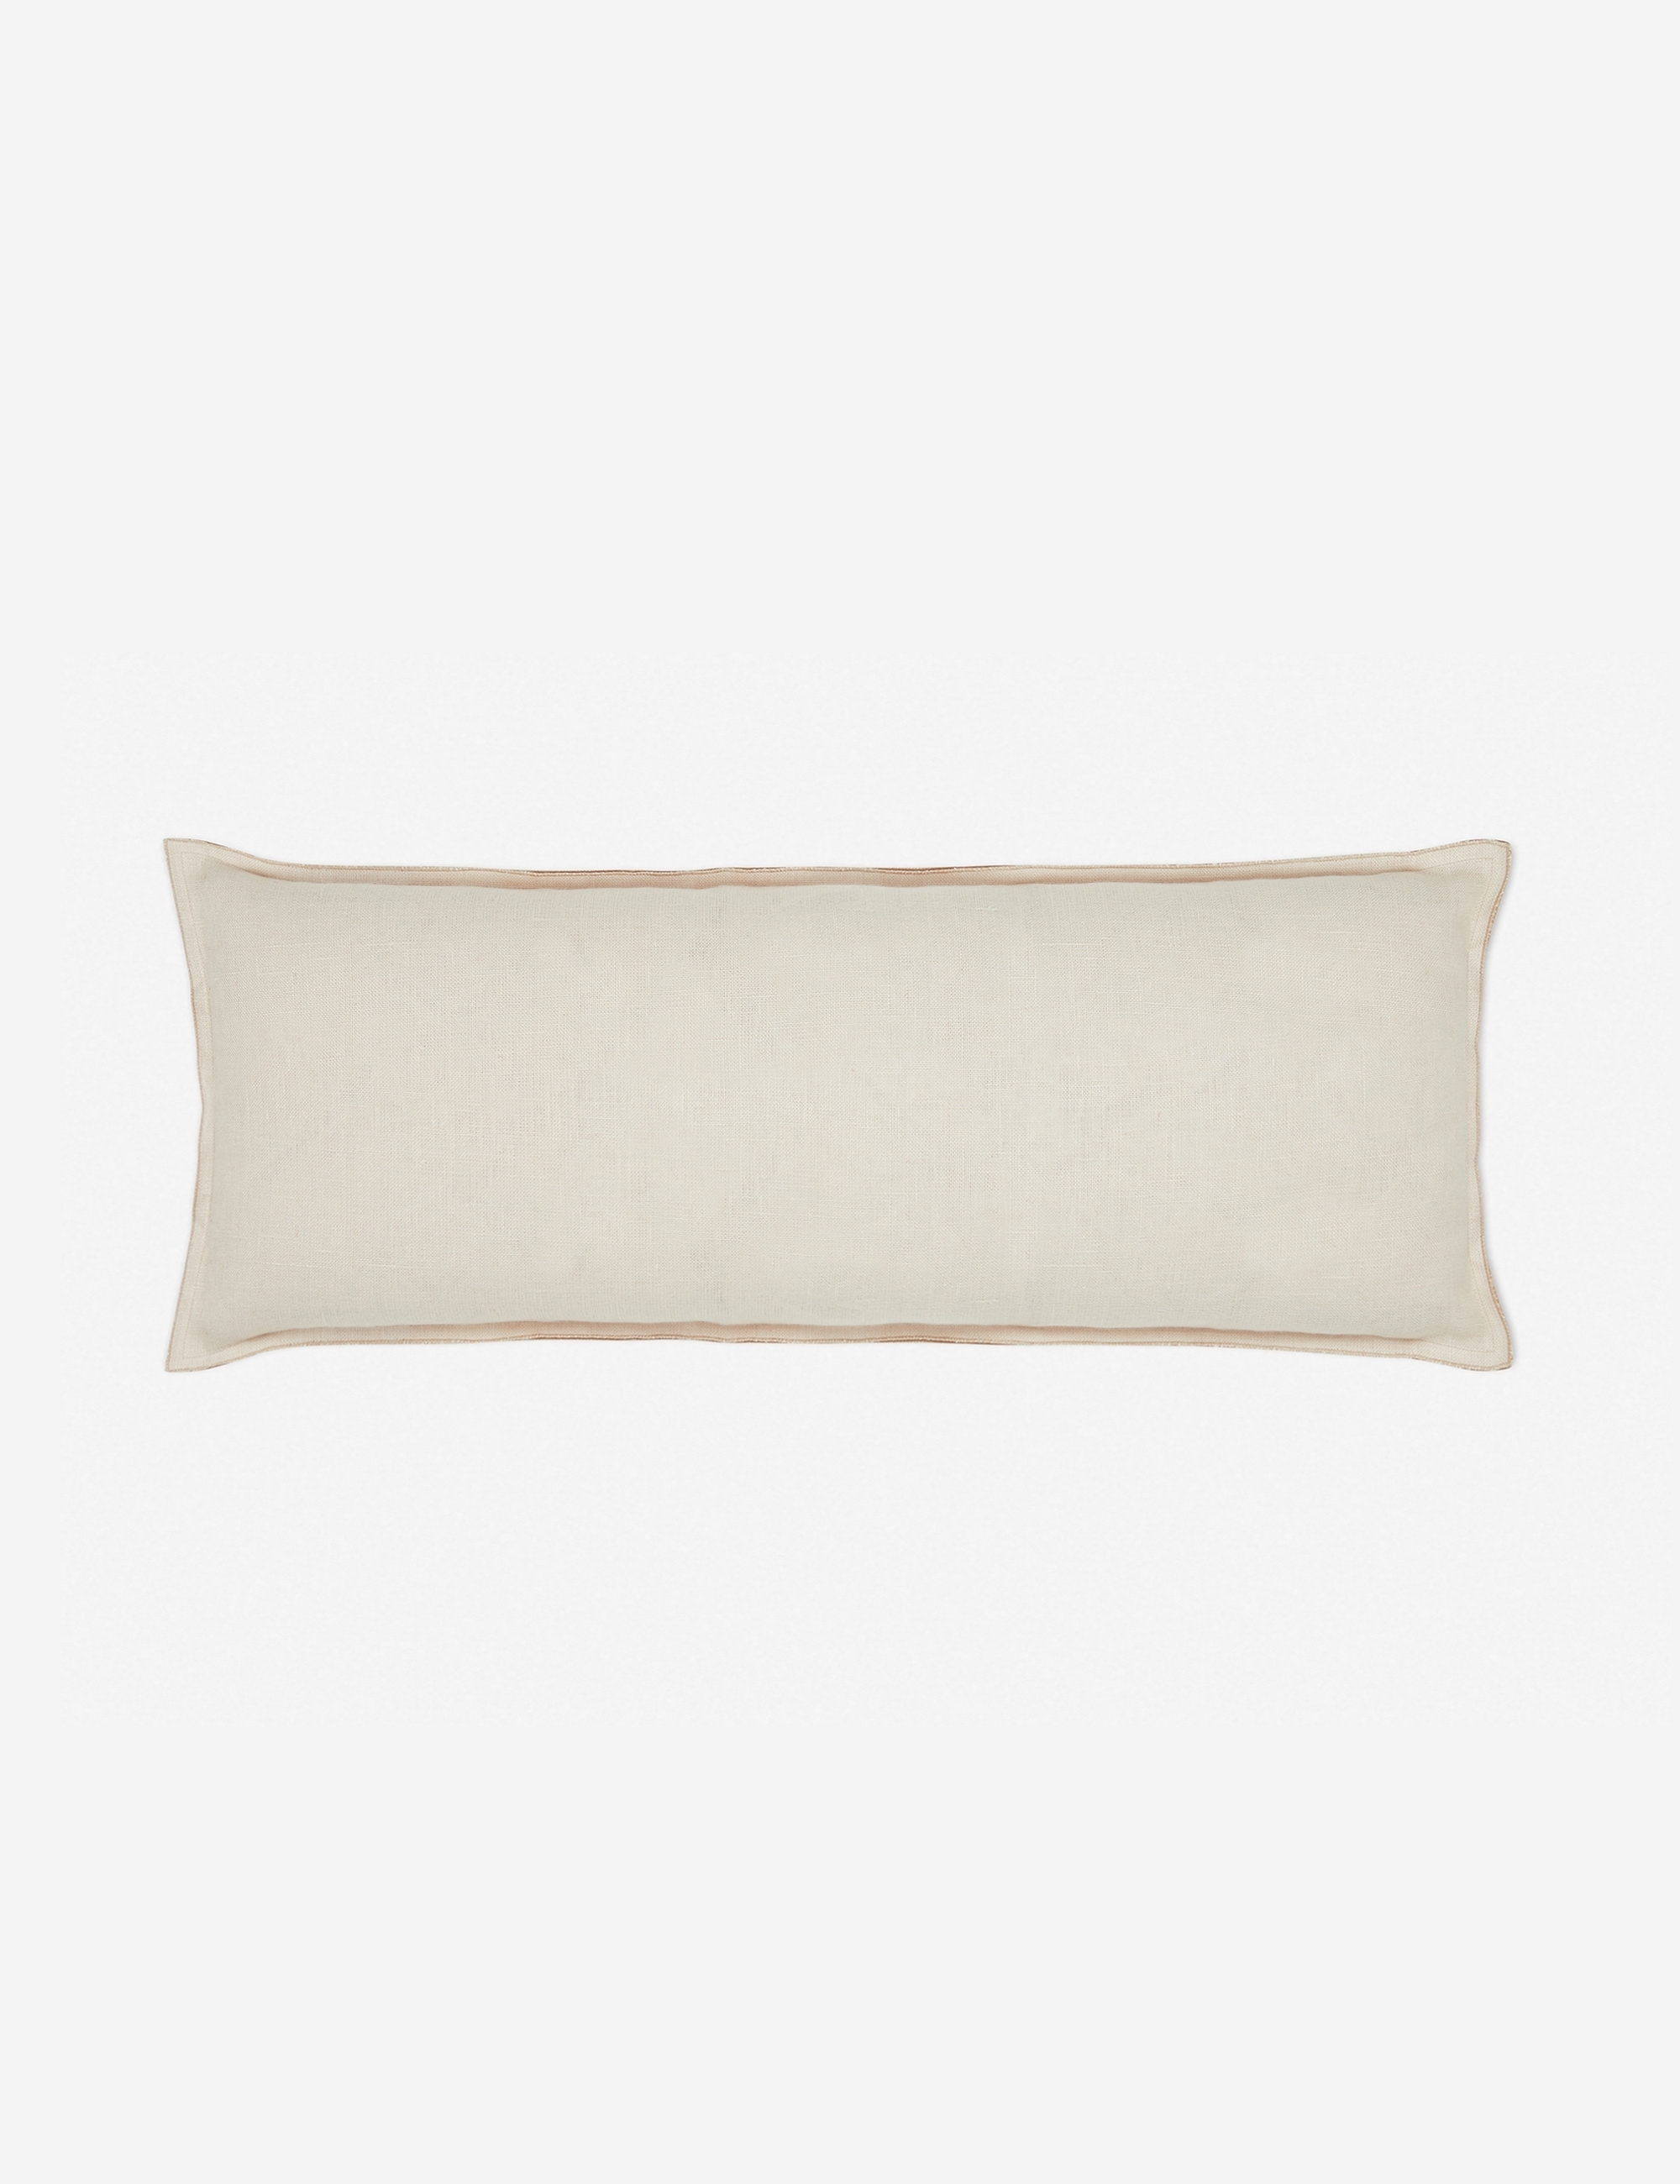 Arlo Linen Long Lumbar Pillow, Light Natural, 36" x 14" - Image 2